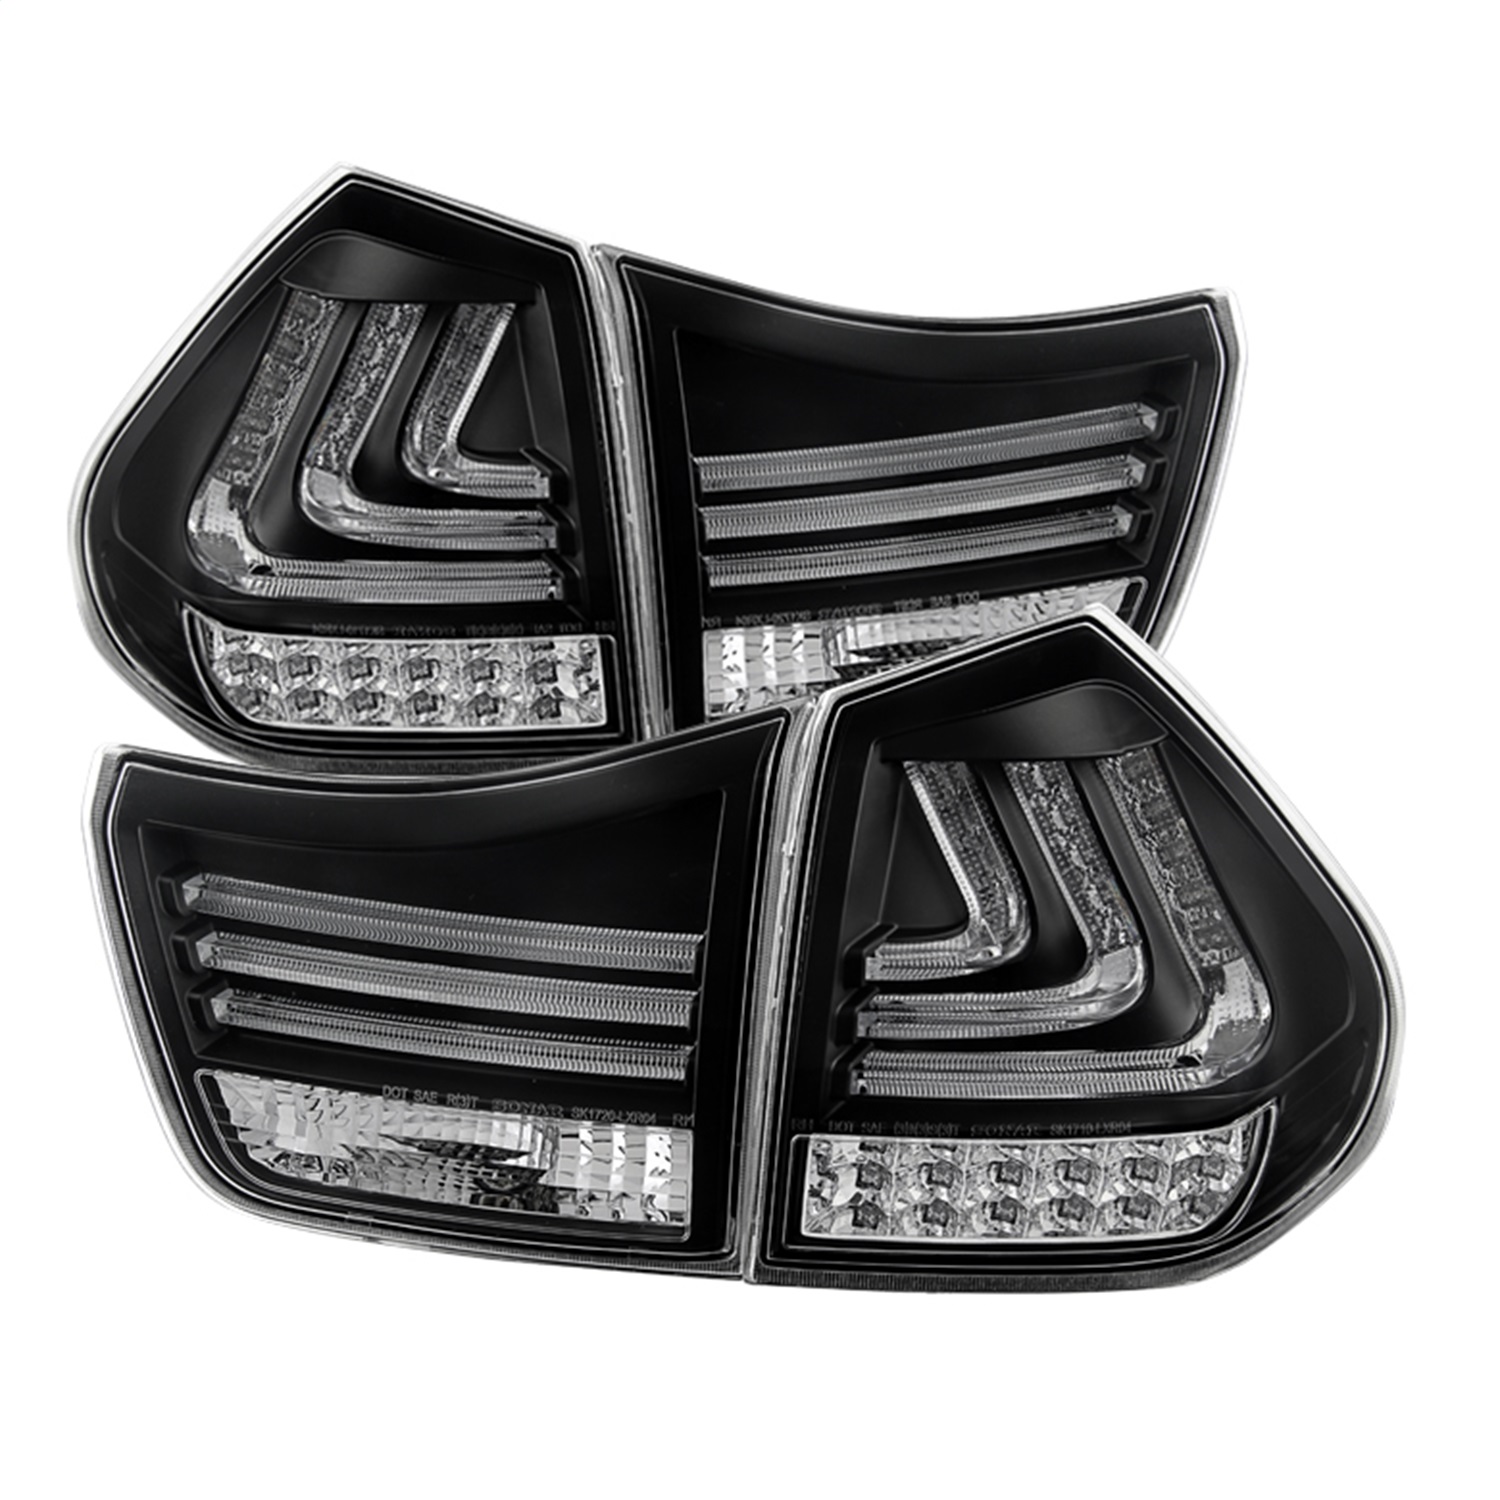 Spyder Auto 5080837 LED Tail Lights Fits 04-09 RX330 RX350